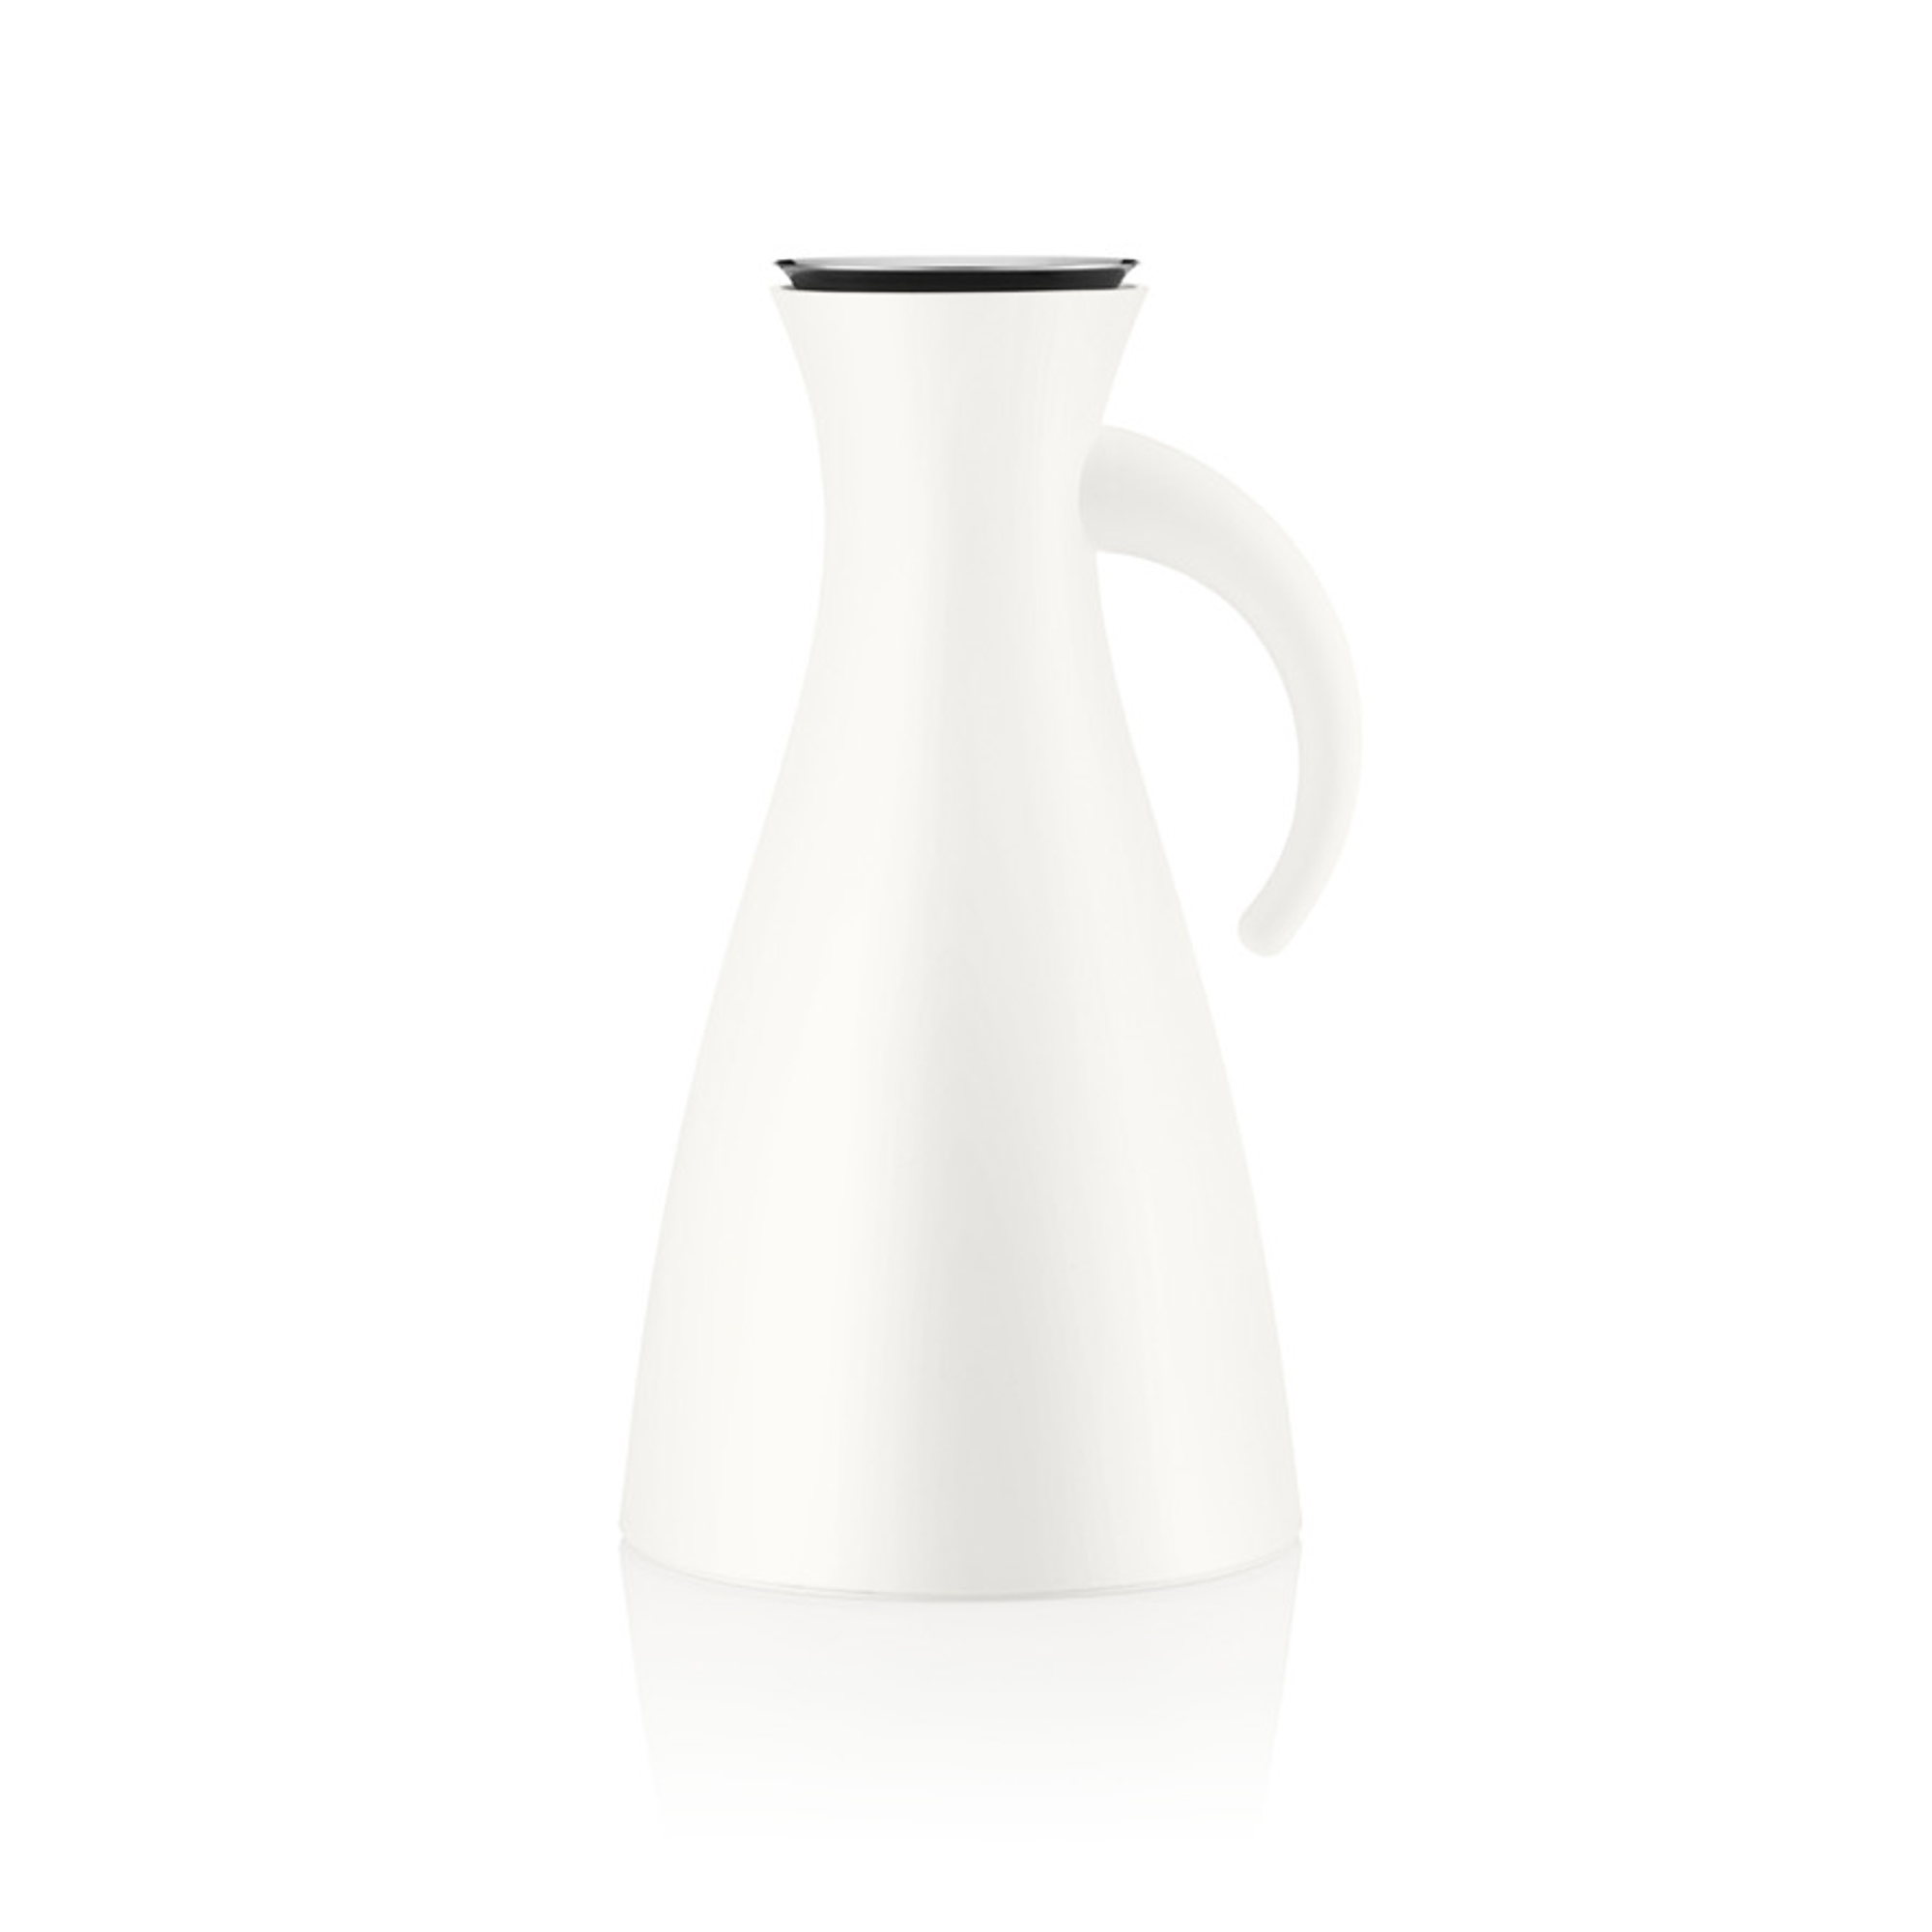 Vacuum jug - 1 liter - White